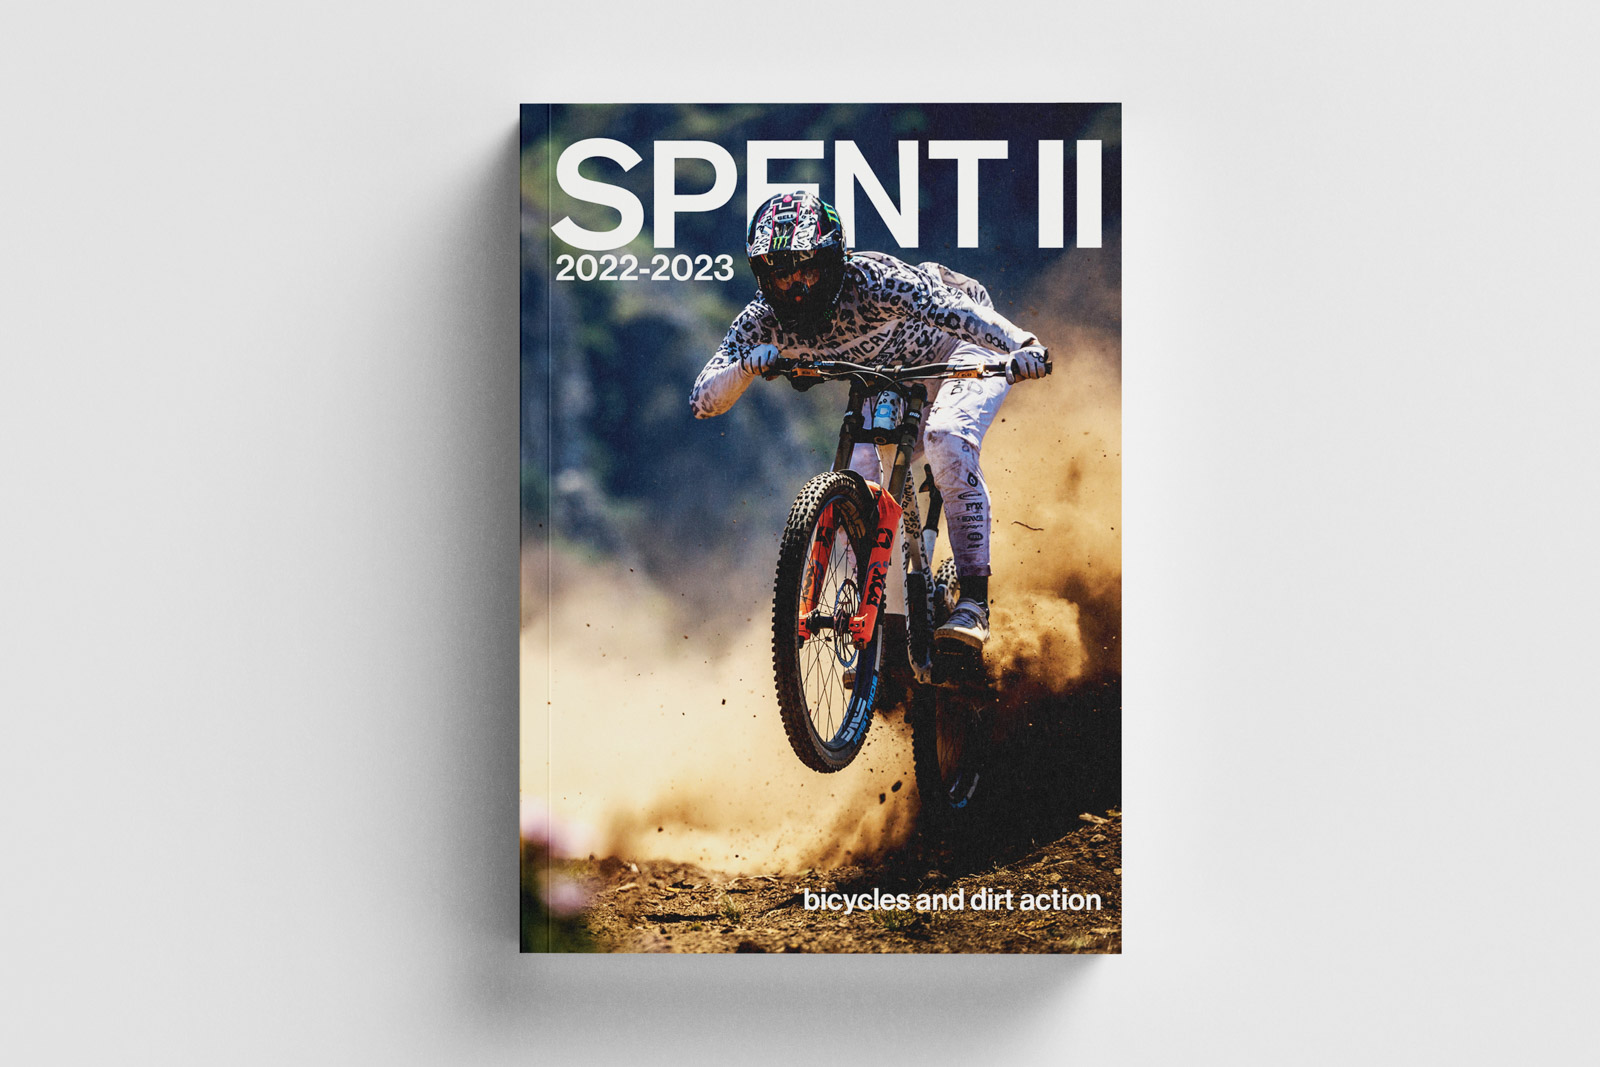 Spent 2 misspent summers mountain biking book a book about mountain biking-